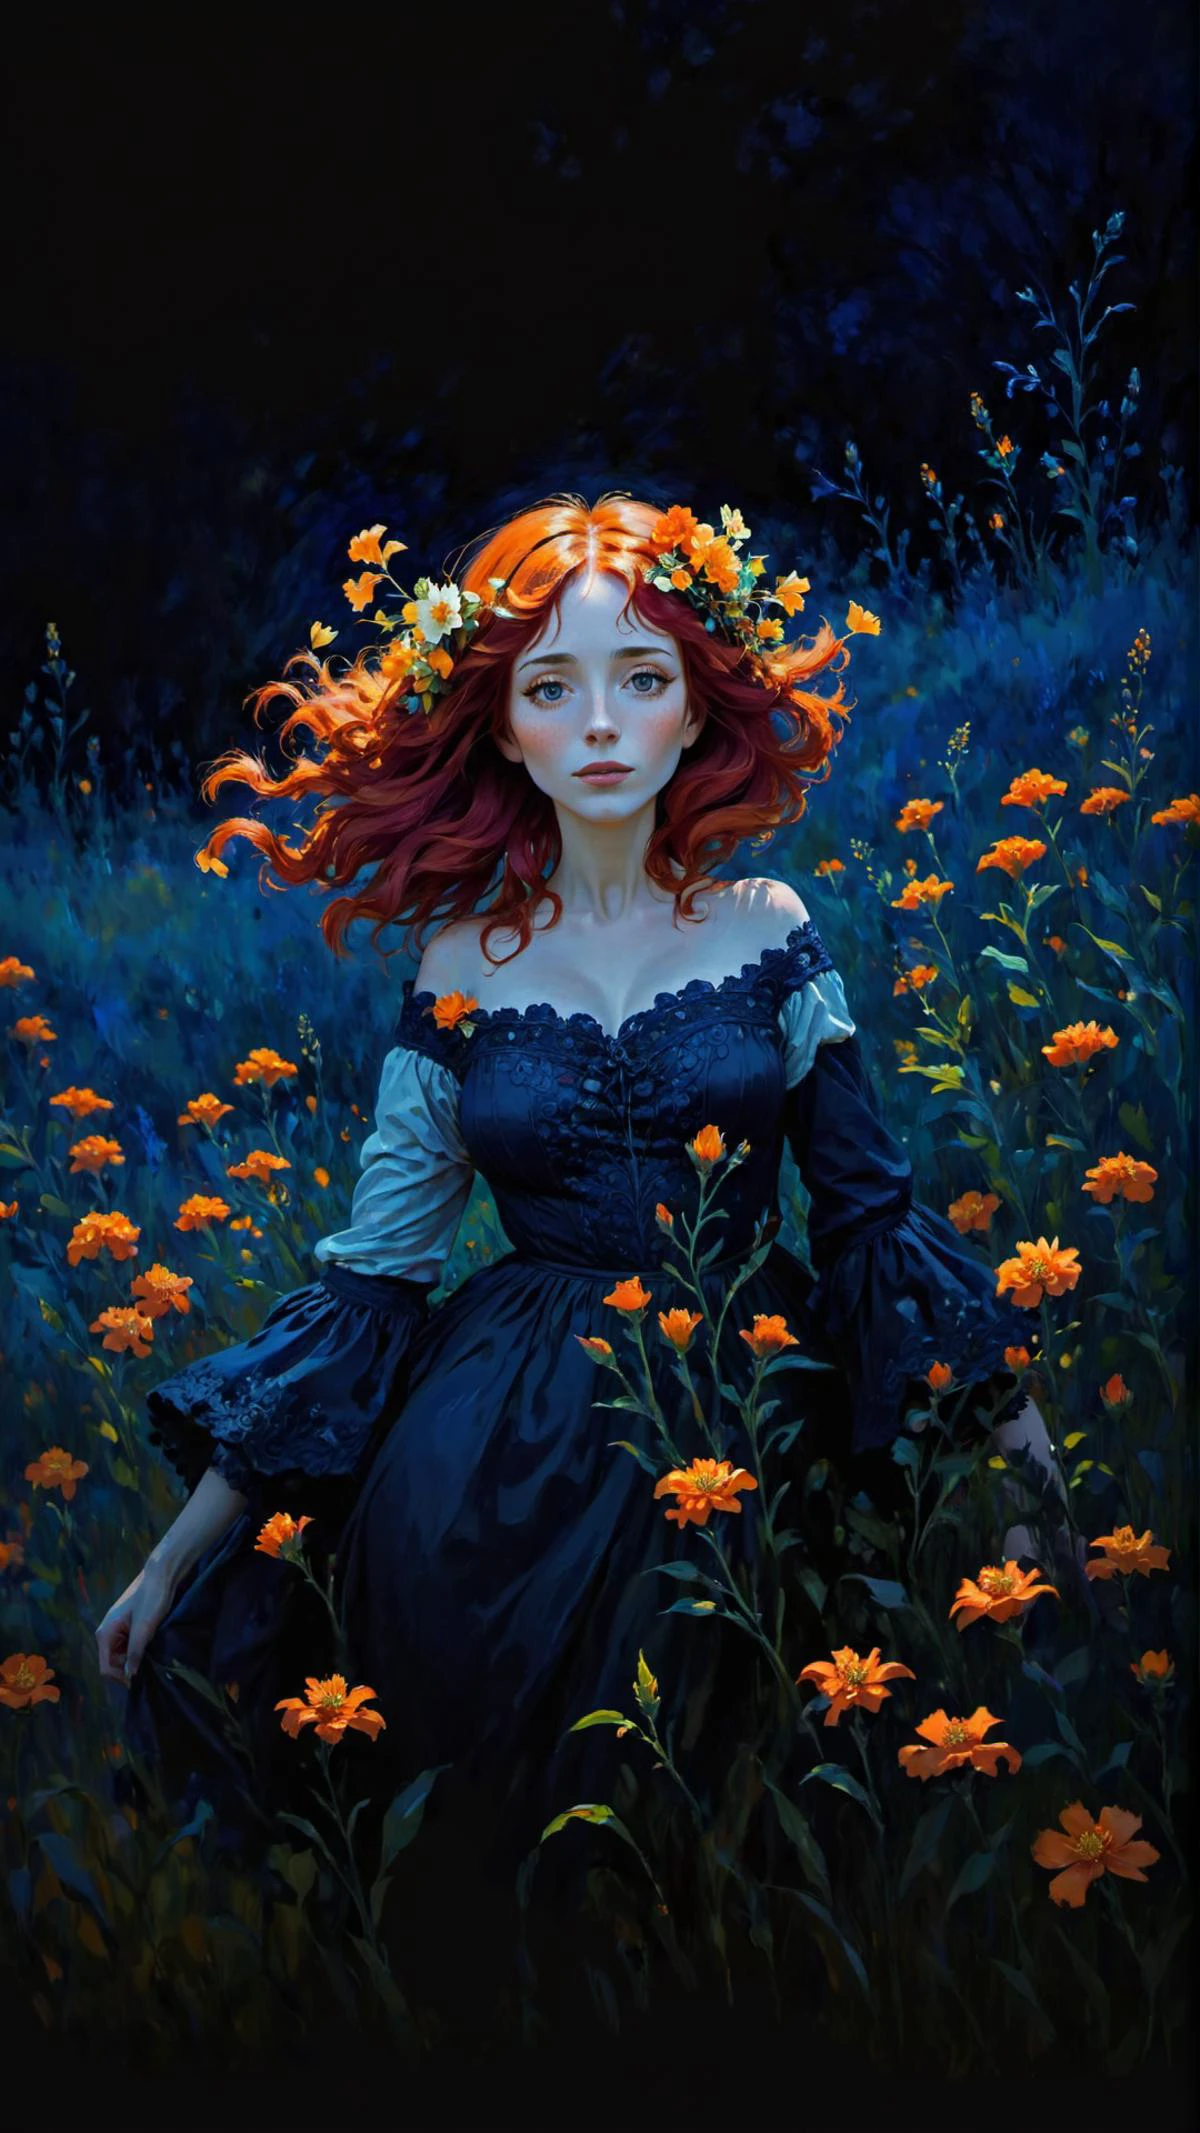 الرسم الانطباعي على طراز كلود مونيه, امرأة ذات شعر أحمر وزهور برتقالية في شعرها, في حقل زهور البرتقال, خلفية زرقاء داكنة, ألوان نابضة بالحياة, فن الخيال,